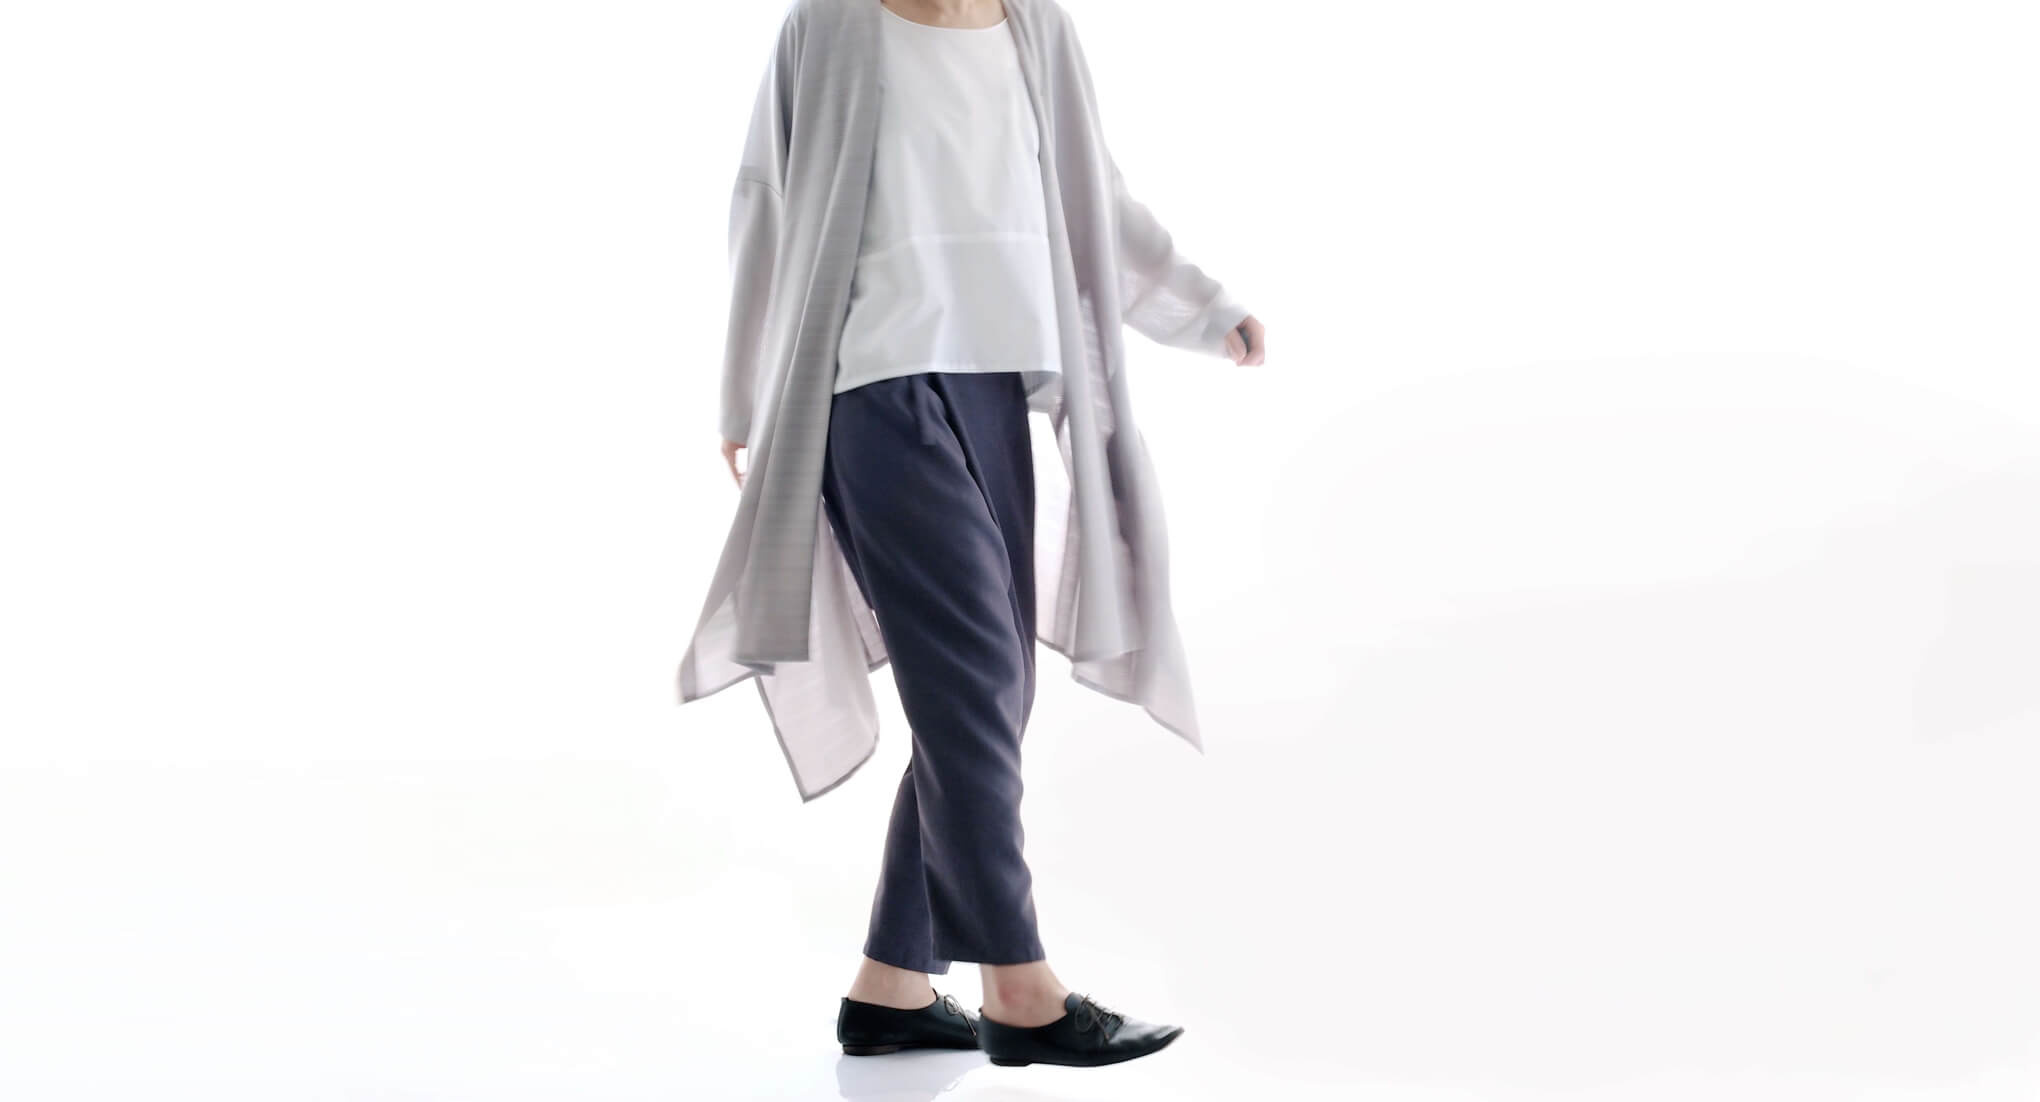 ローブブラウス | 日本の布の衣